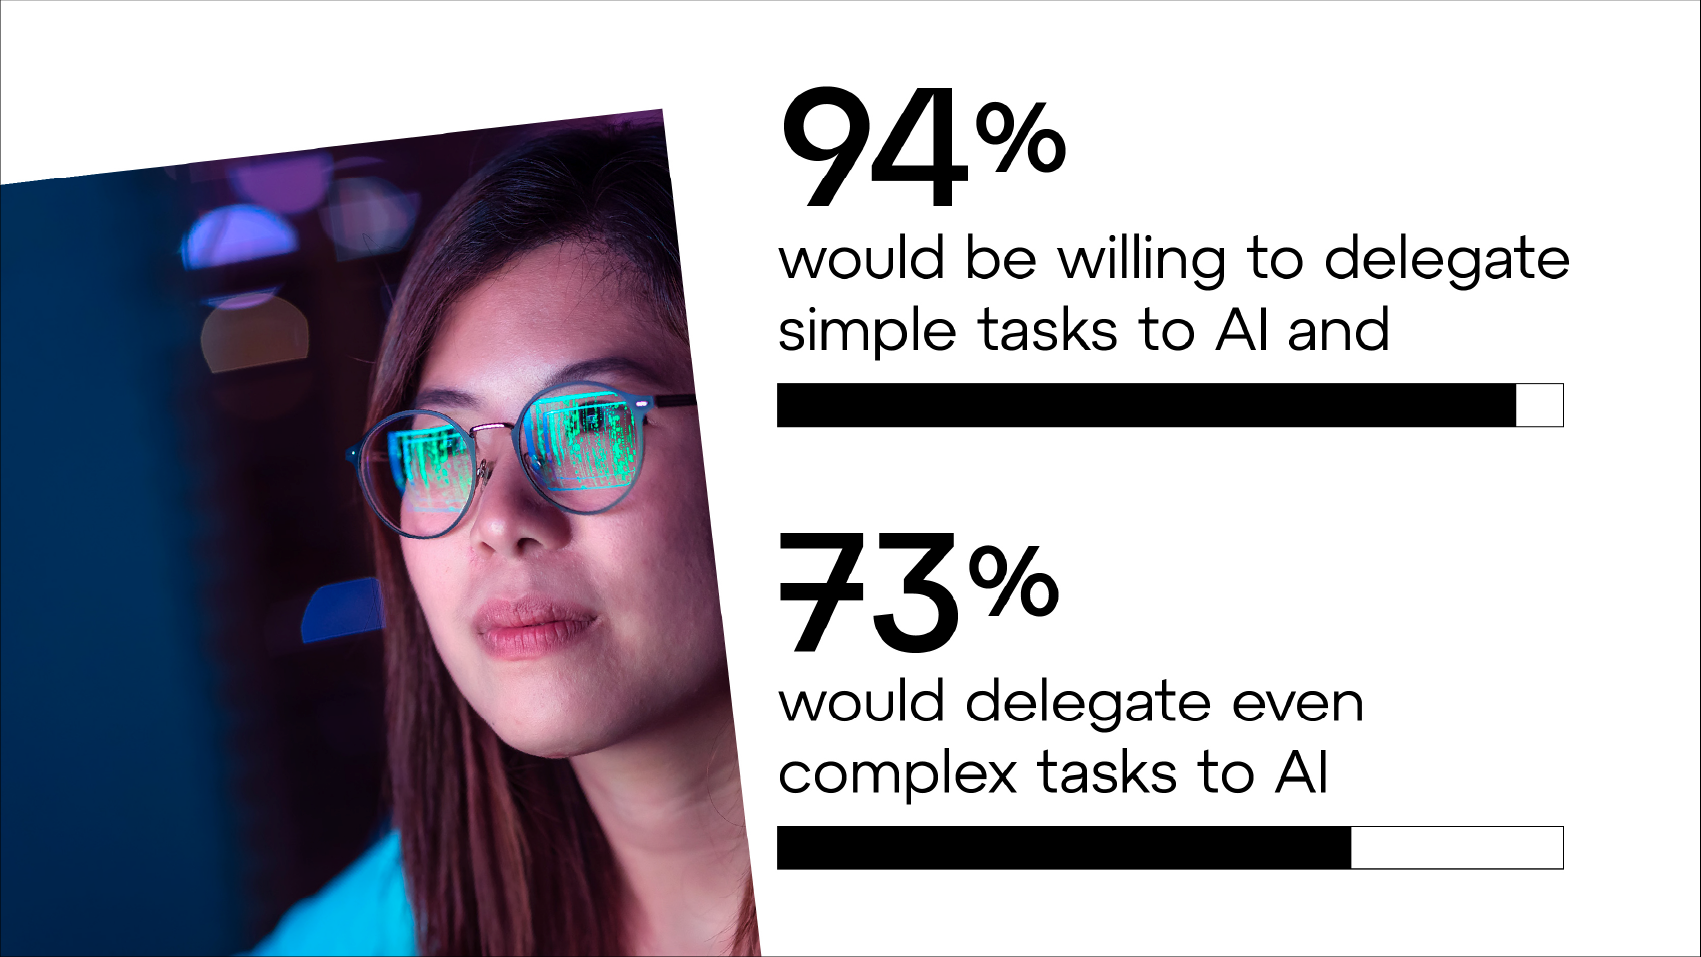 Il 94% sarebbe disposto a delegare attività semplici all'IA e il 73% delegherebbe anche attività complesse.